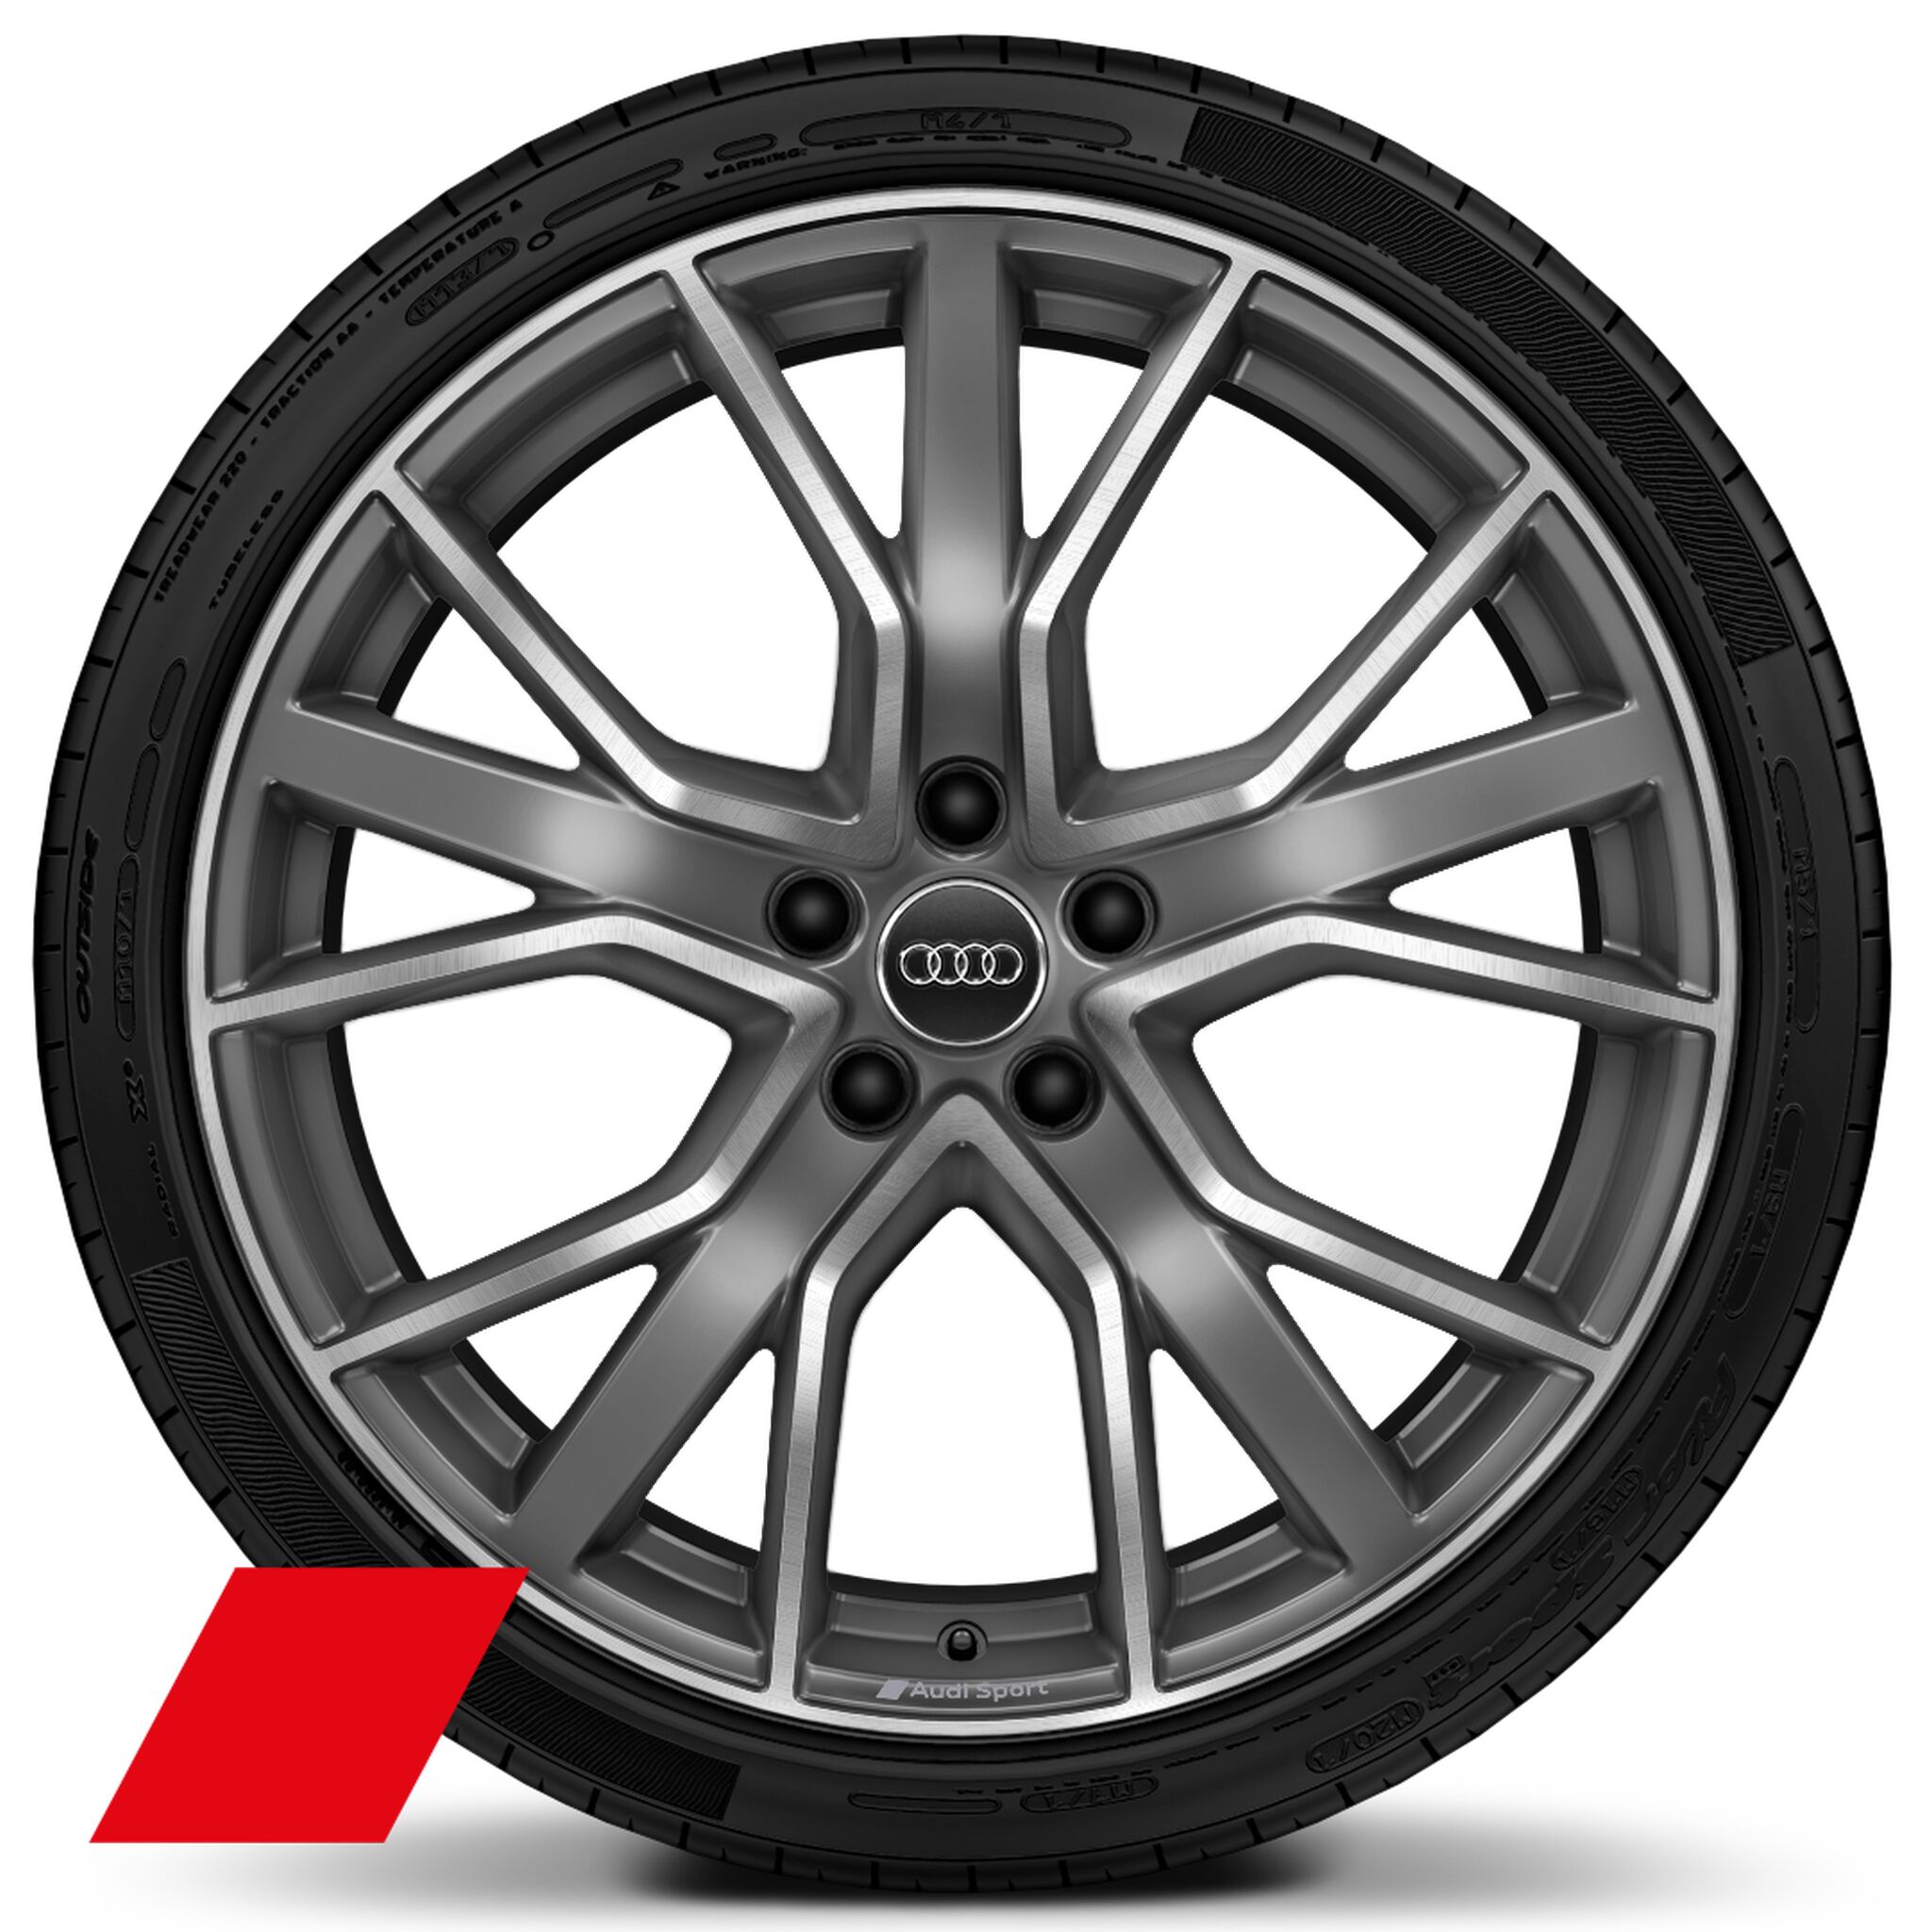 Räder Audi Sport, 5-V-Speichen-Stern, titangrau matt, glanzgedreht, 9,0Jx20, Reifen 265/30 R20